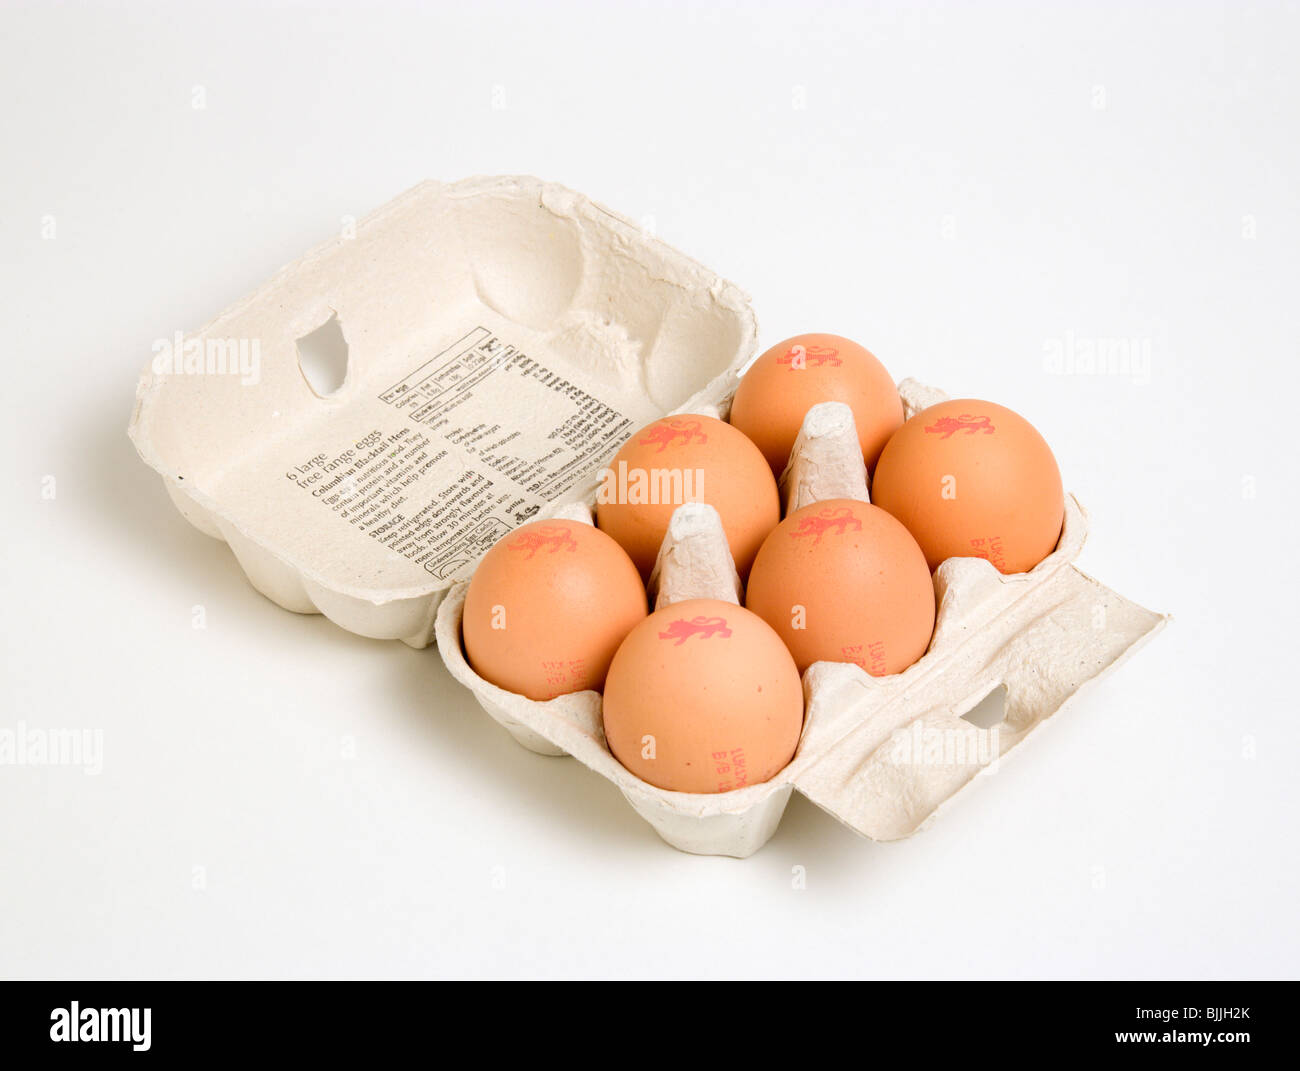 Nahrungsmittel, Uncooked, Eiern, Schachtel mit sechs Freilandeier mit The Lion erfolgenden Eiern bezeichnet, einen strengen Verhaltenskodex Stockfoto